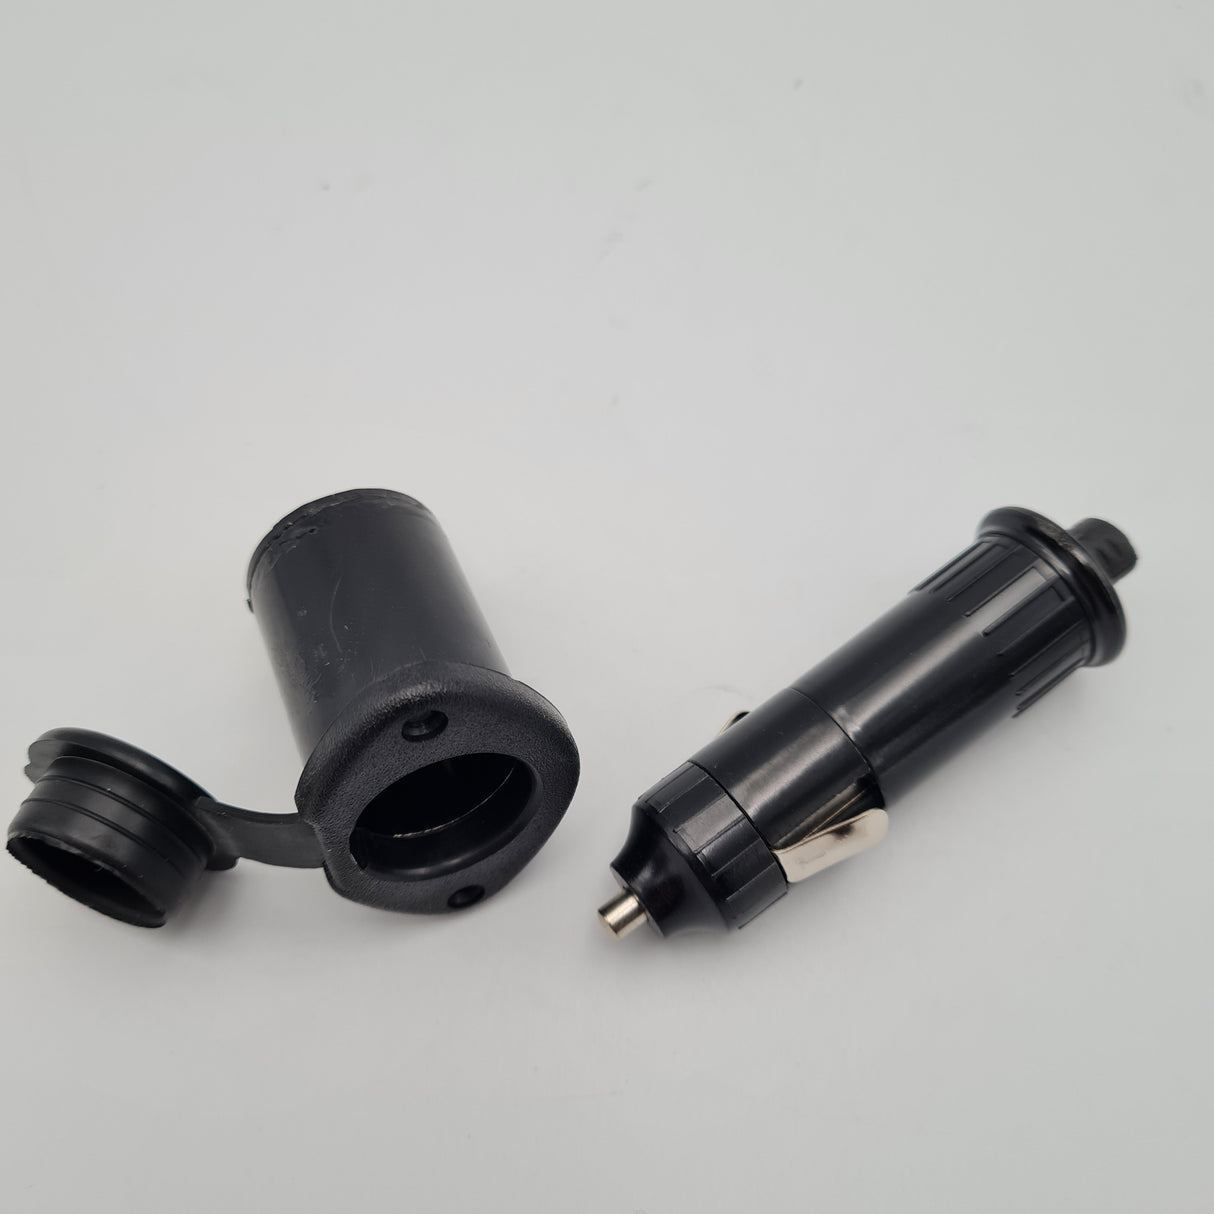 Vehicle Cigar Lighter Plug and Recessed Socket - 12 Volt / 5 amp - W4 - 3754787